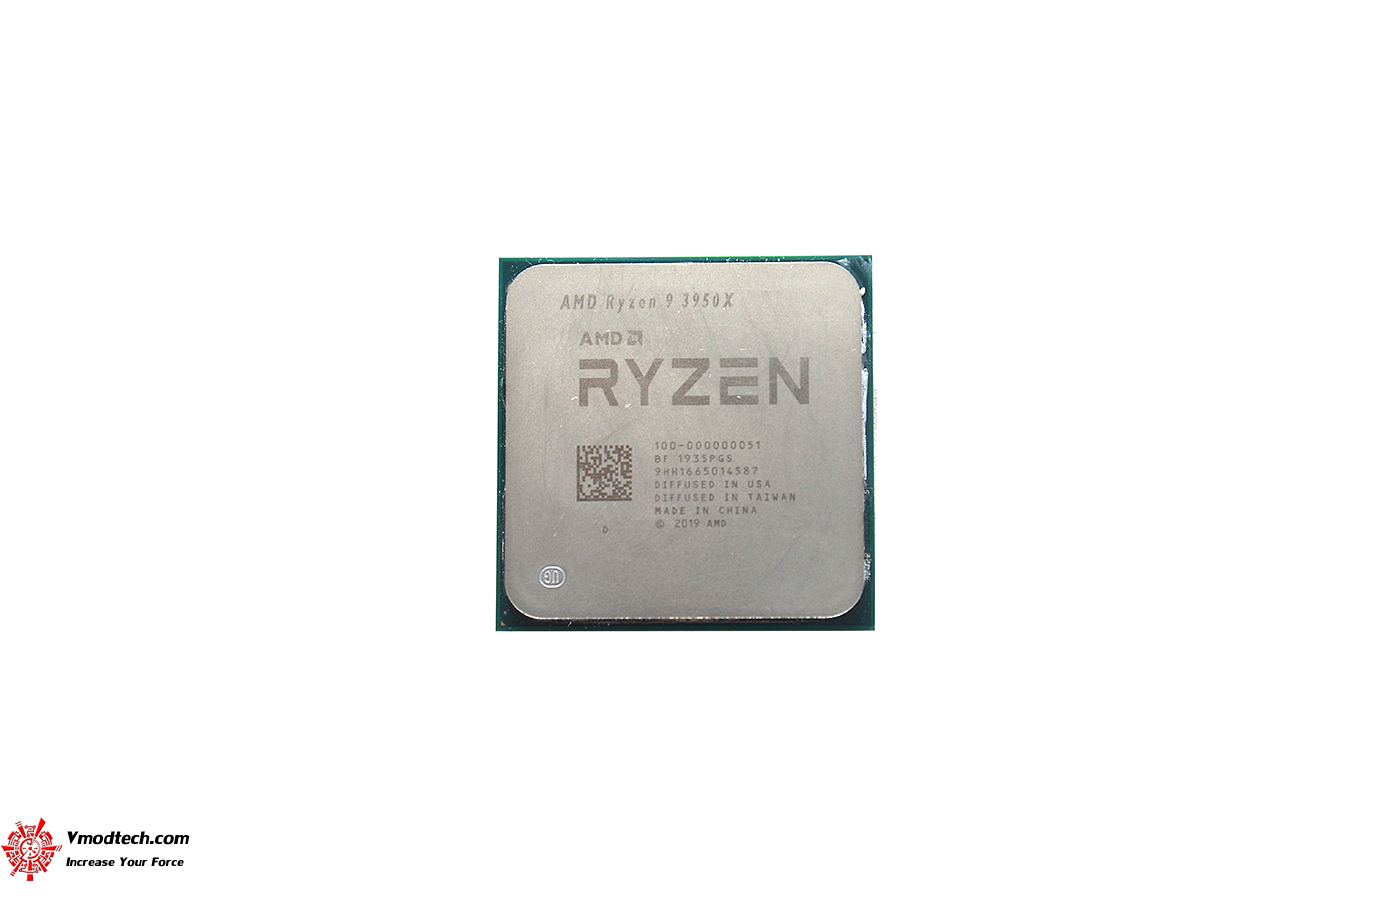 dsc 4741 AMD RYZEN 9 3950X PROCESSOR REVIEW 